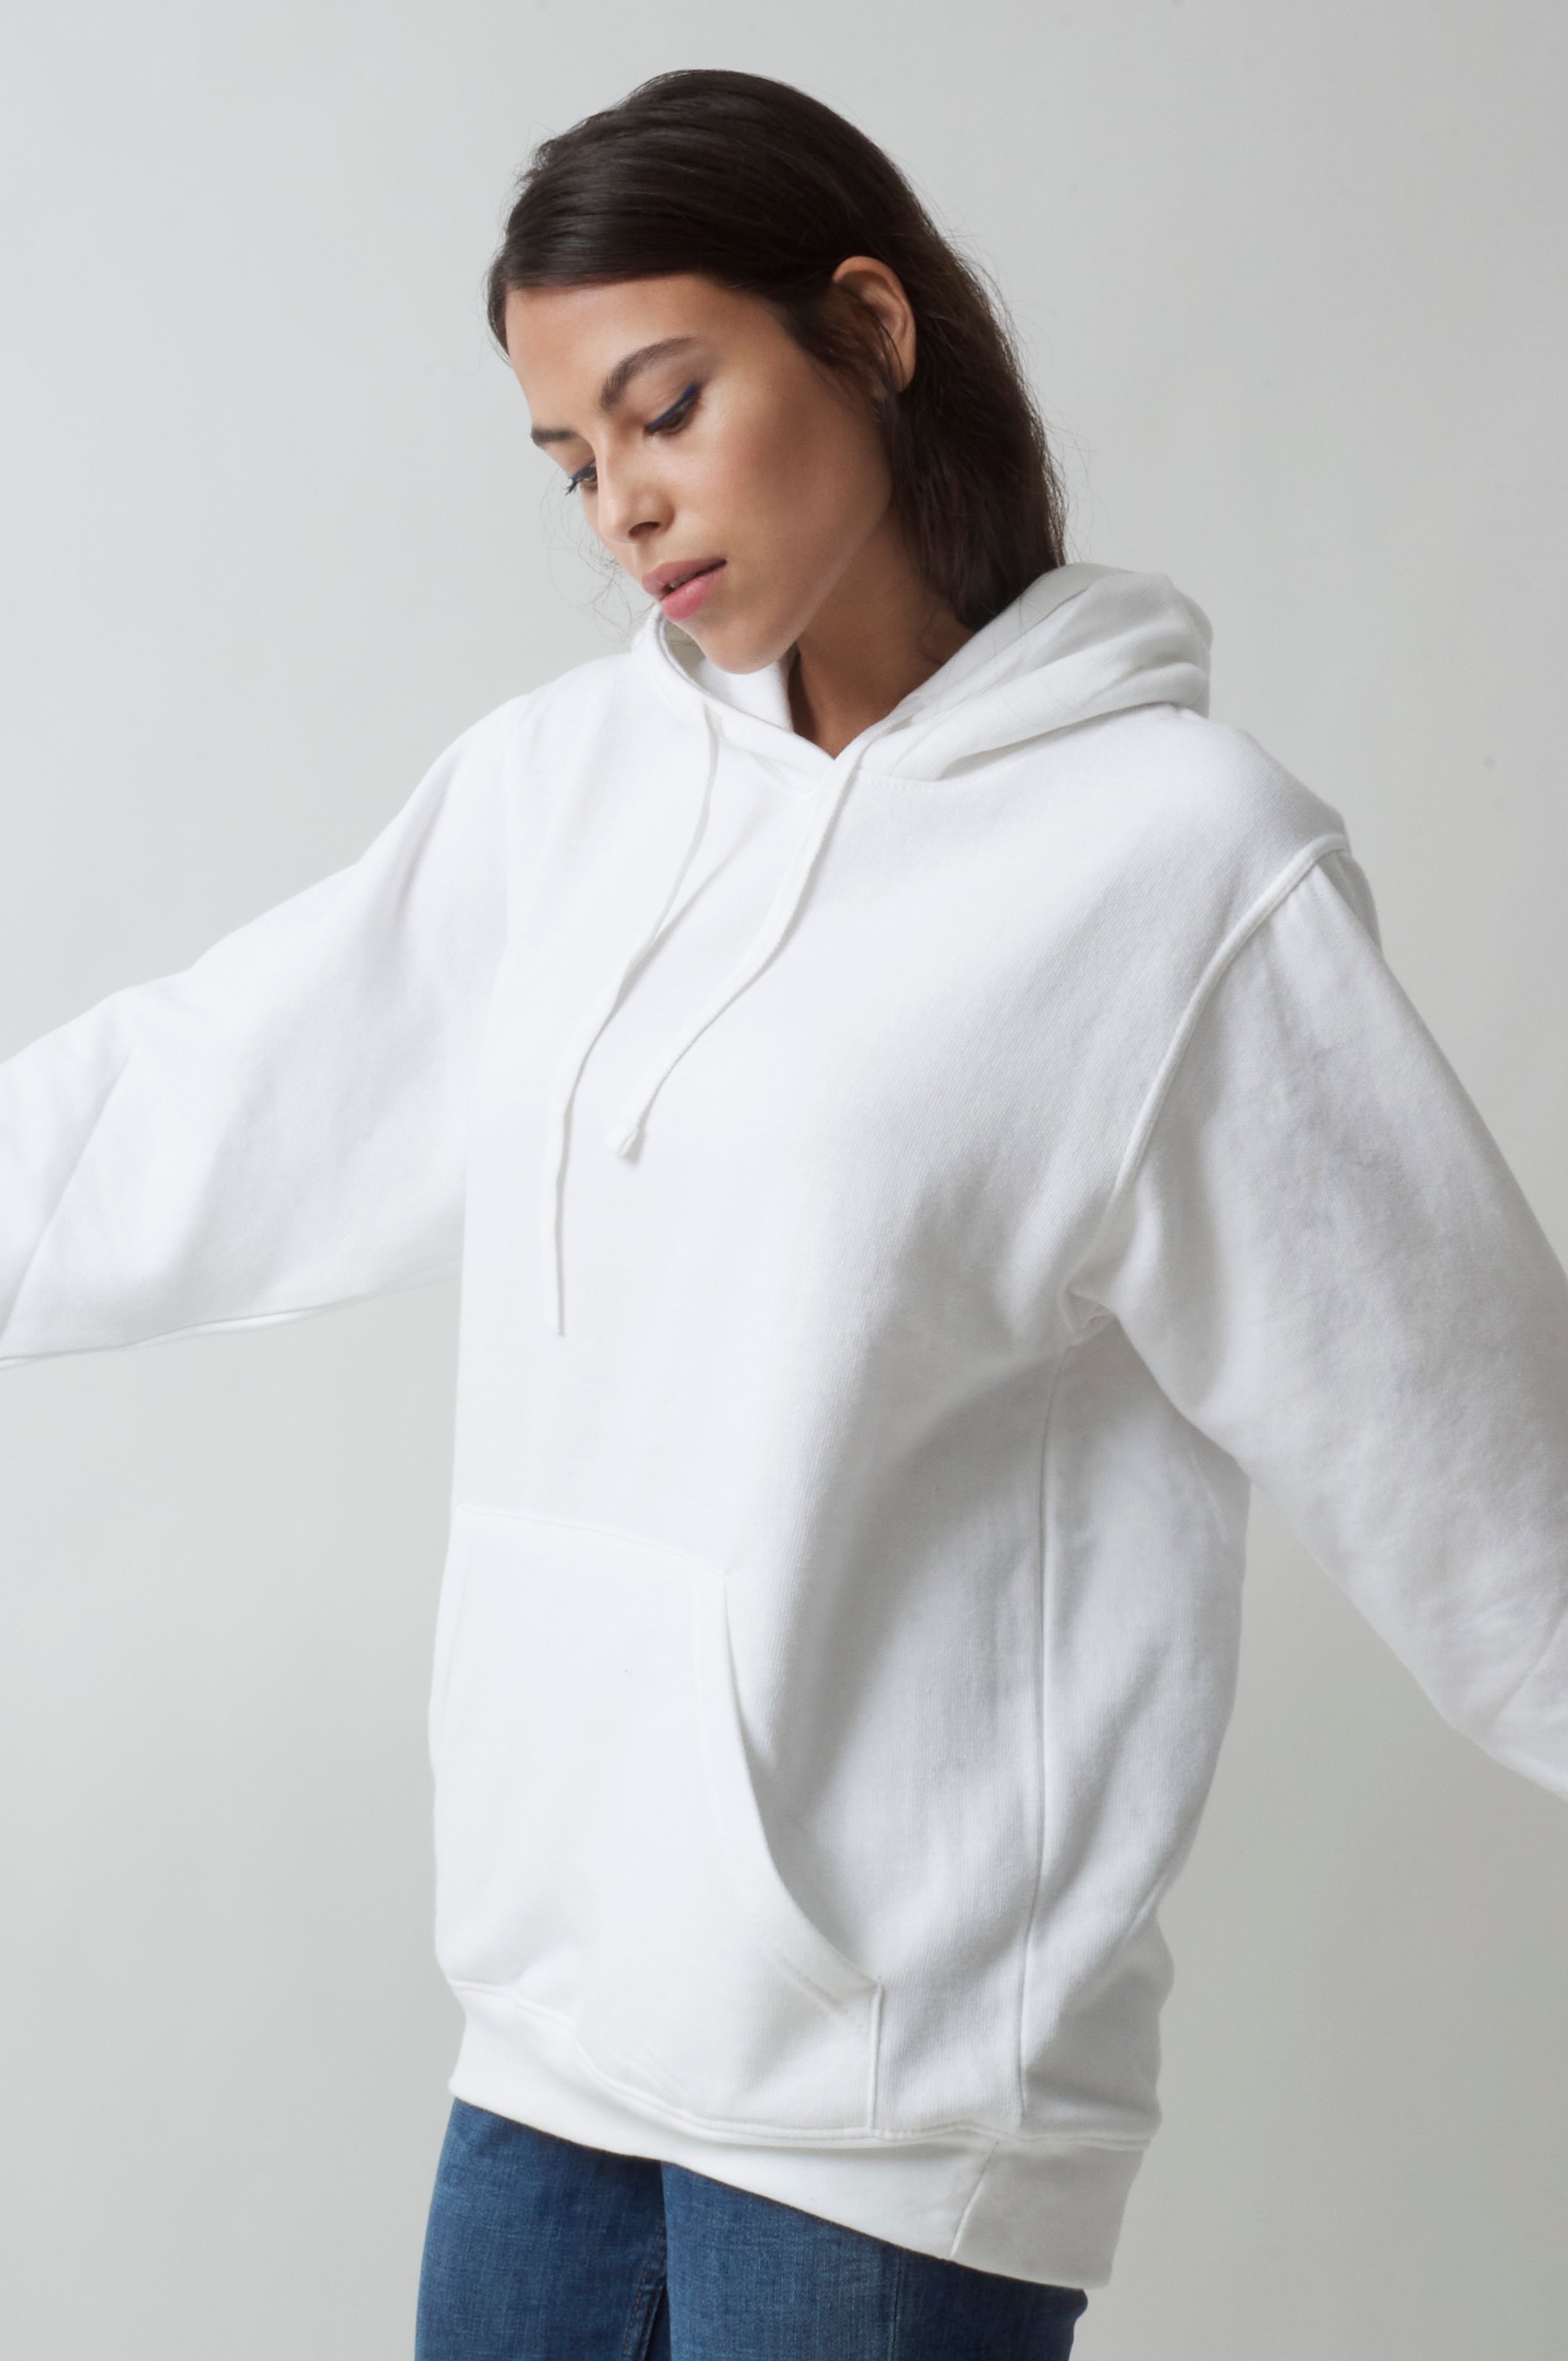 Radsow Apparel - Sweat Shirt à capuche London pour femmes White - Radsow Apparel 